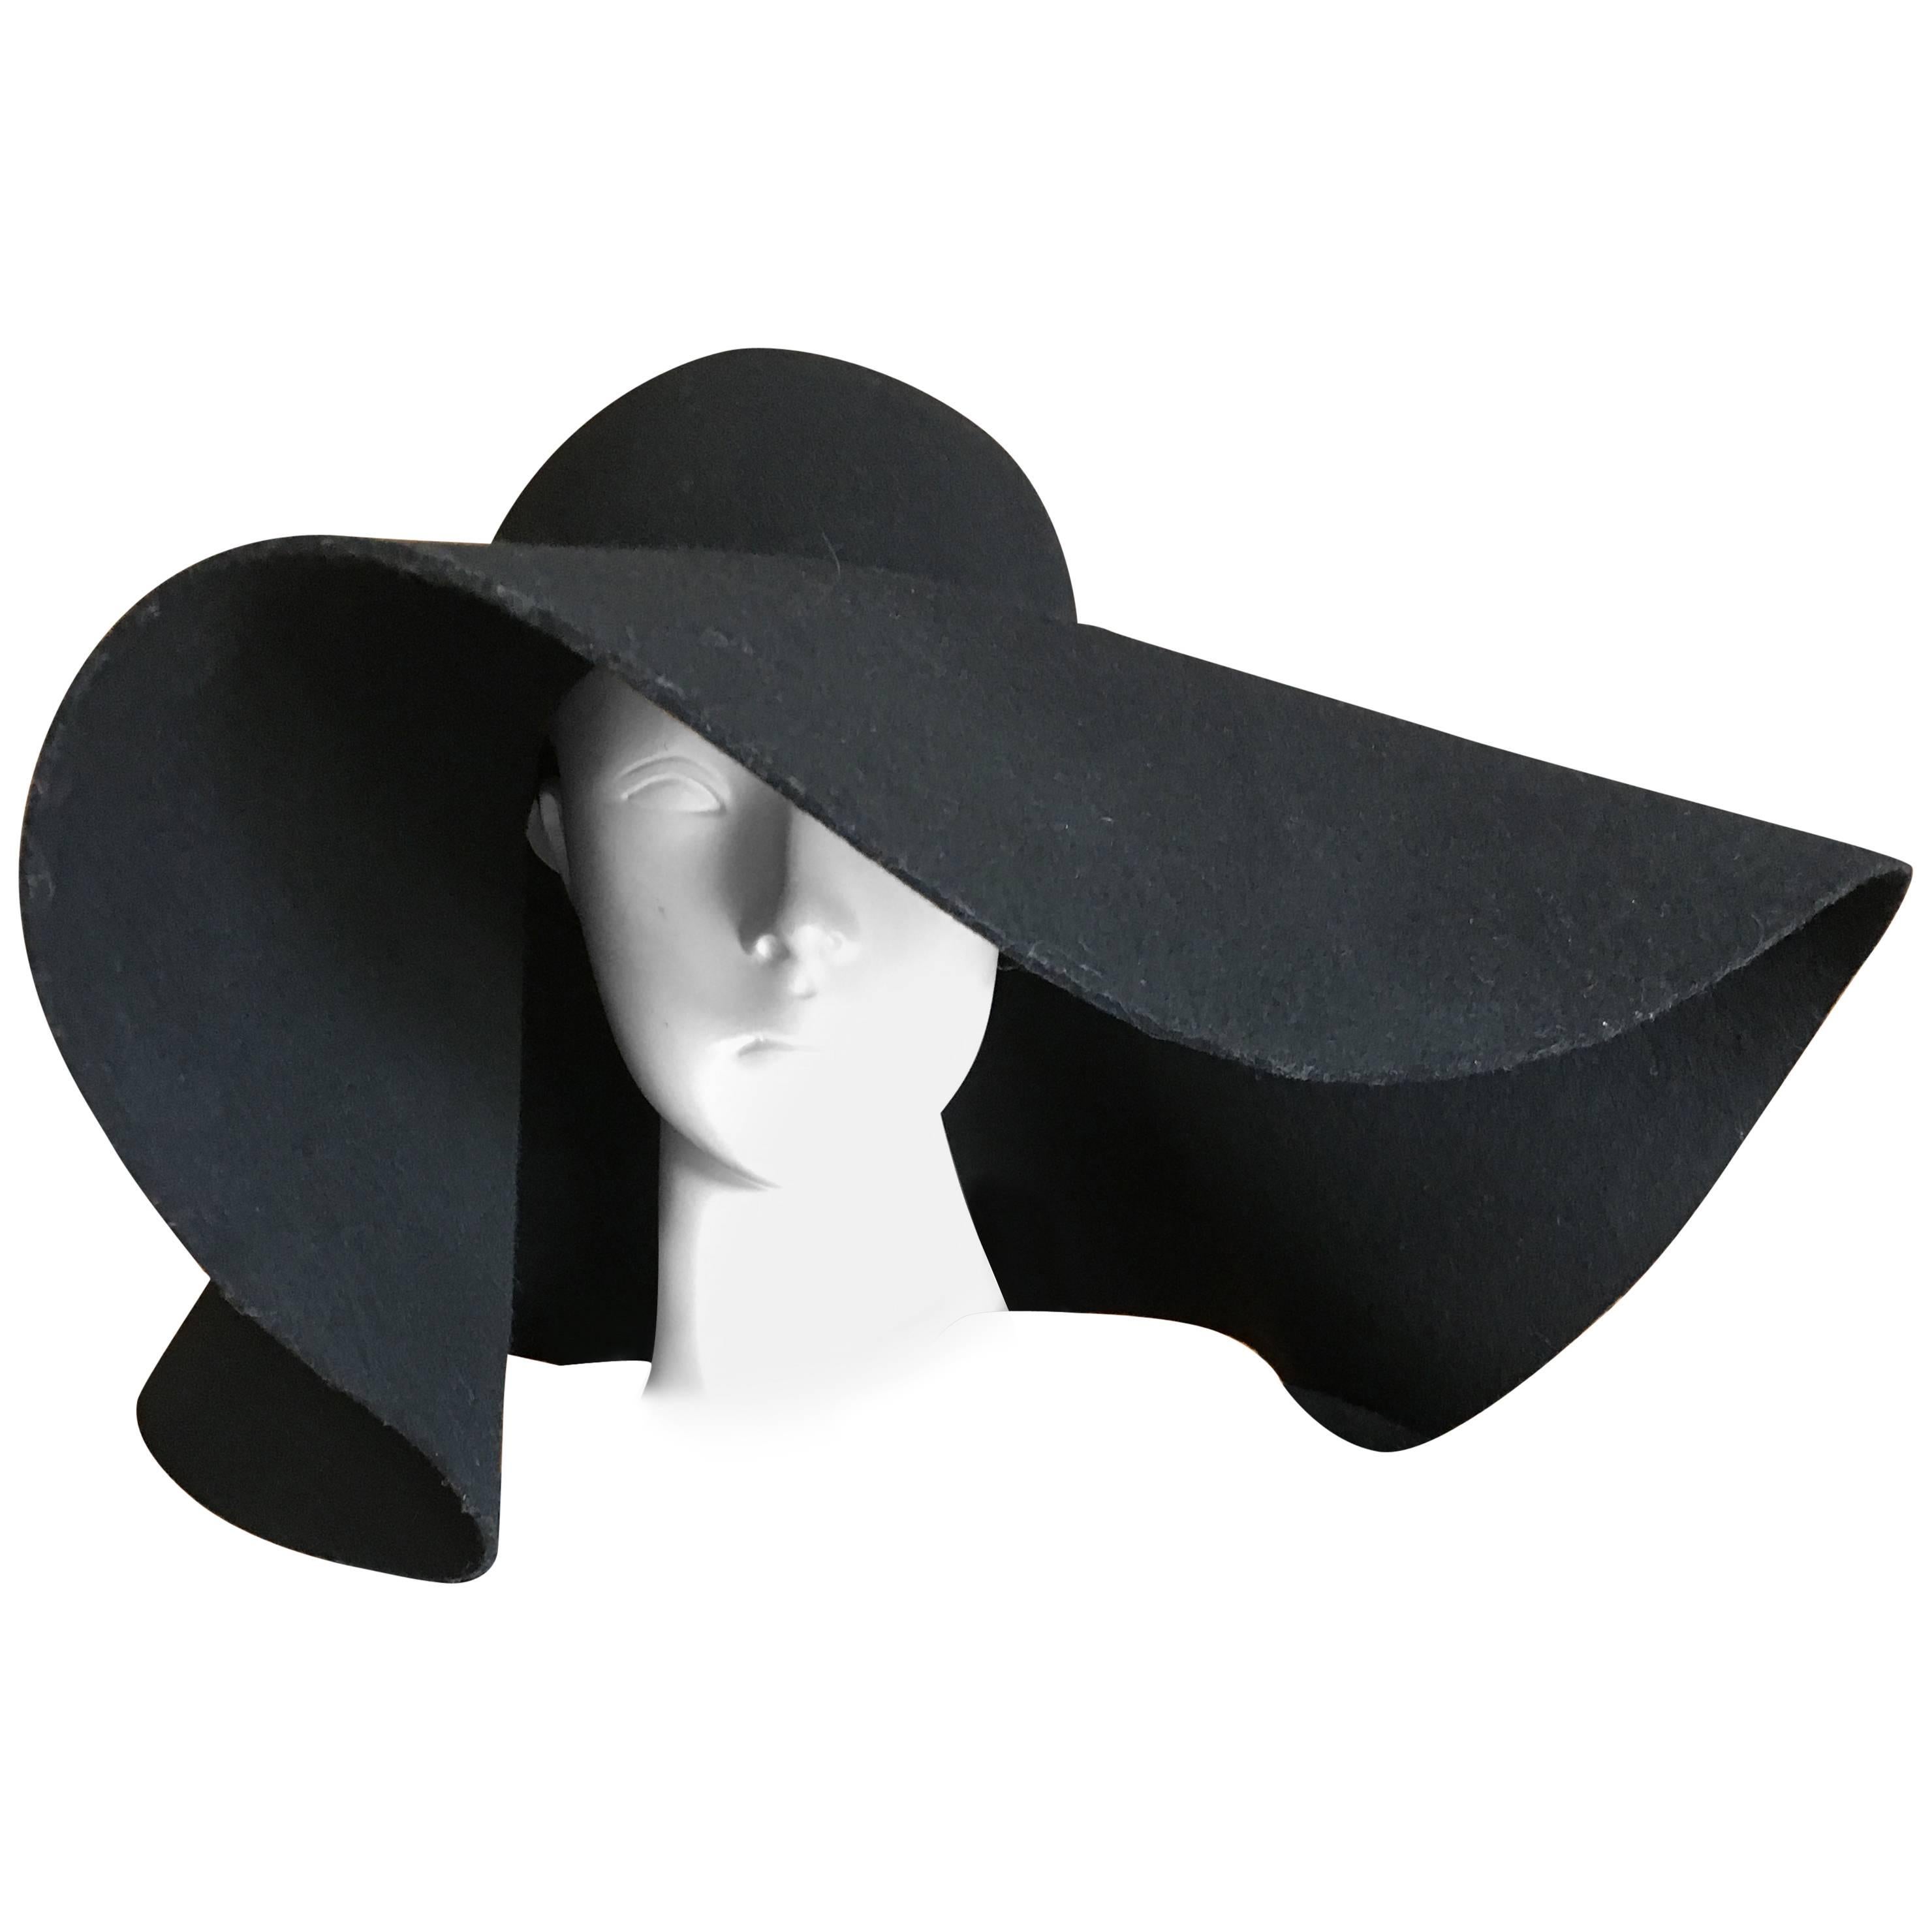 Yves Saint Laurent Rive Gauche Wide Brim Black Hat New / Tags